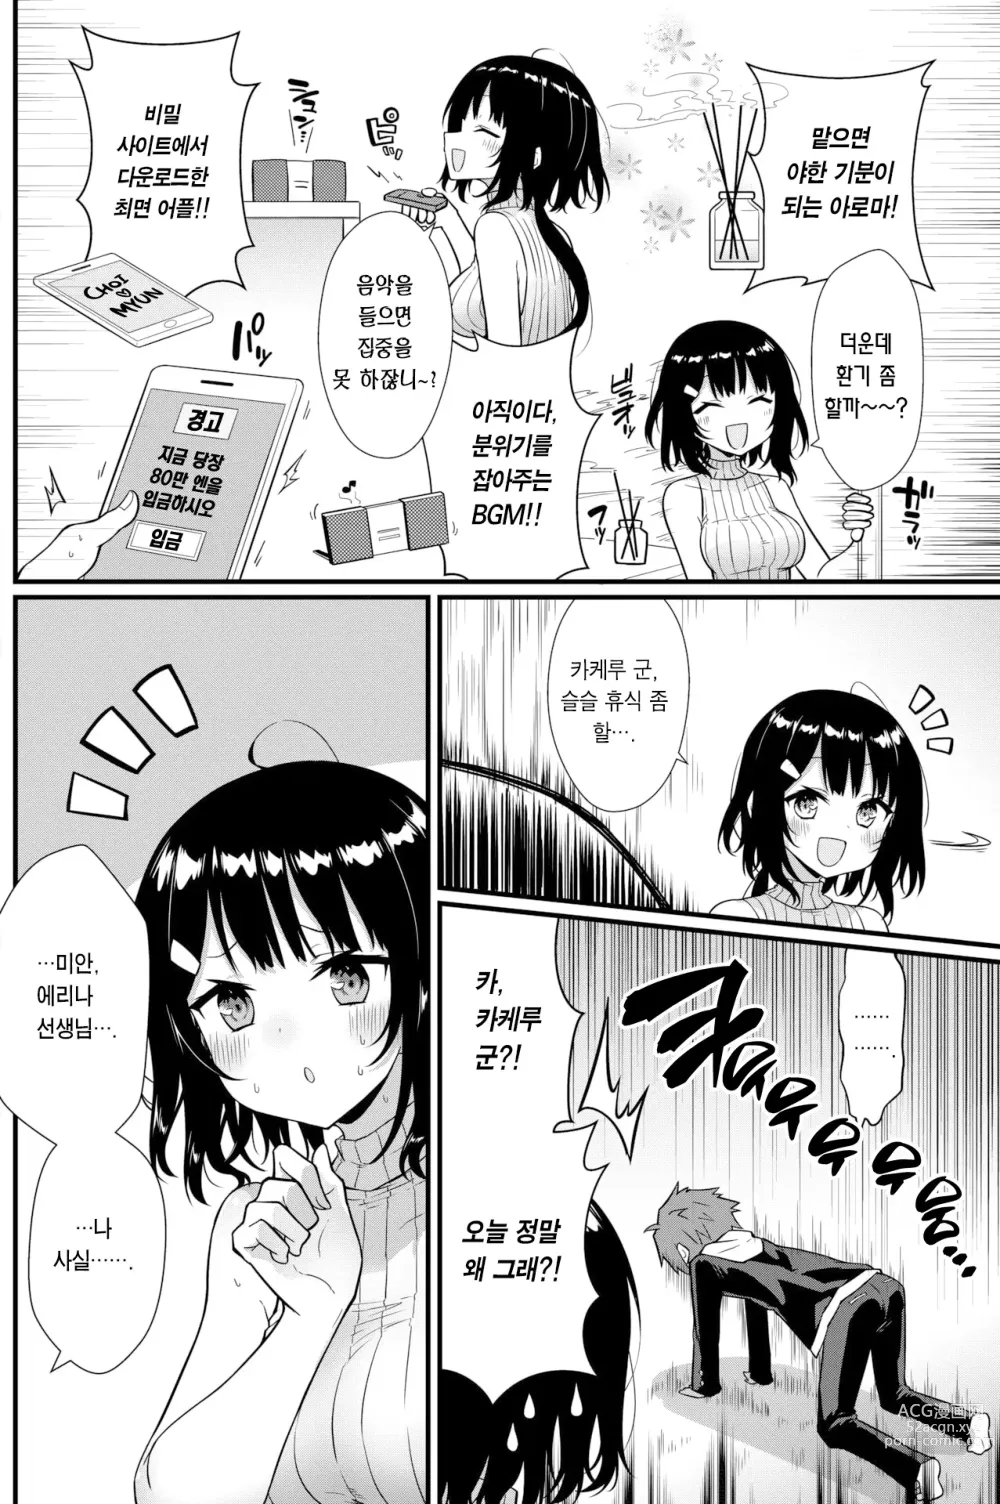 Page 7 of manga 선생님에게 듣는 약은 없다! (decensored)